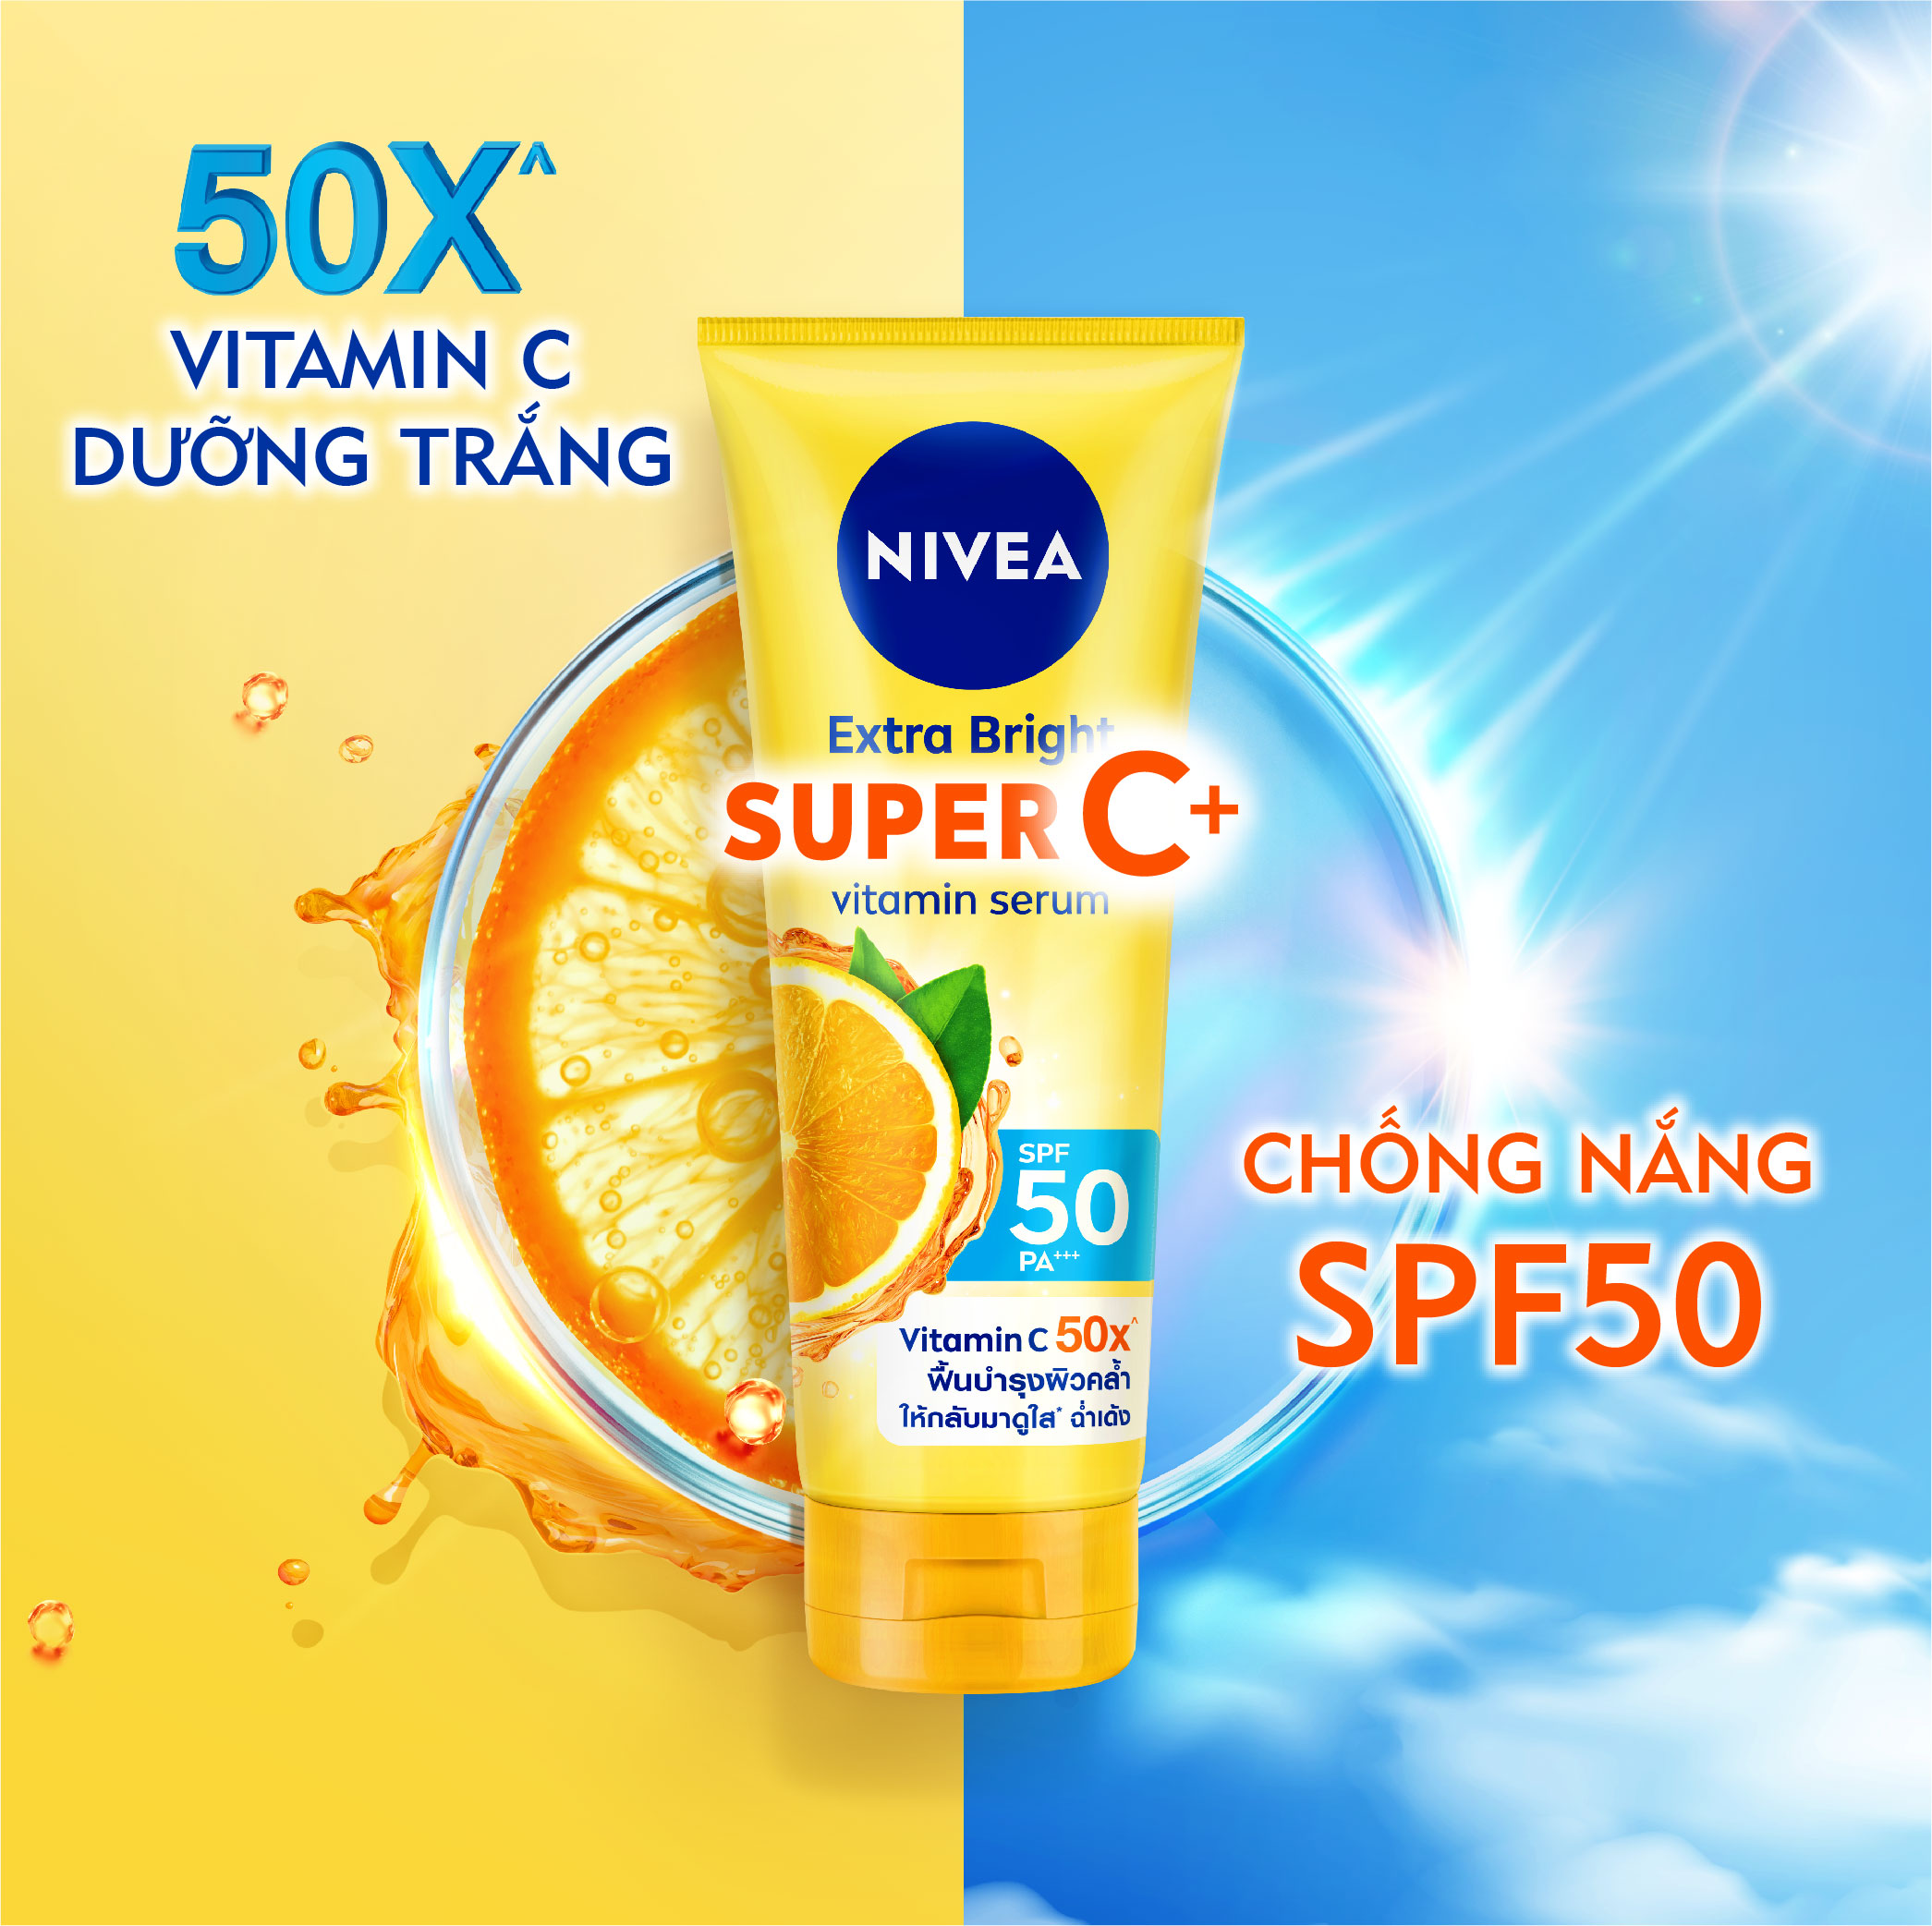 Nivea Extra Bright Super C+ Vitamin Serum SPF50 PA+++